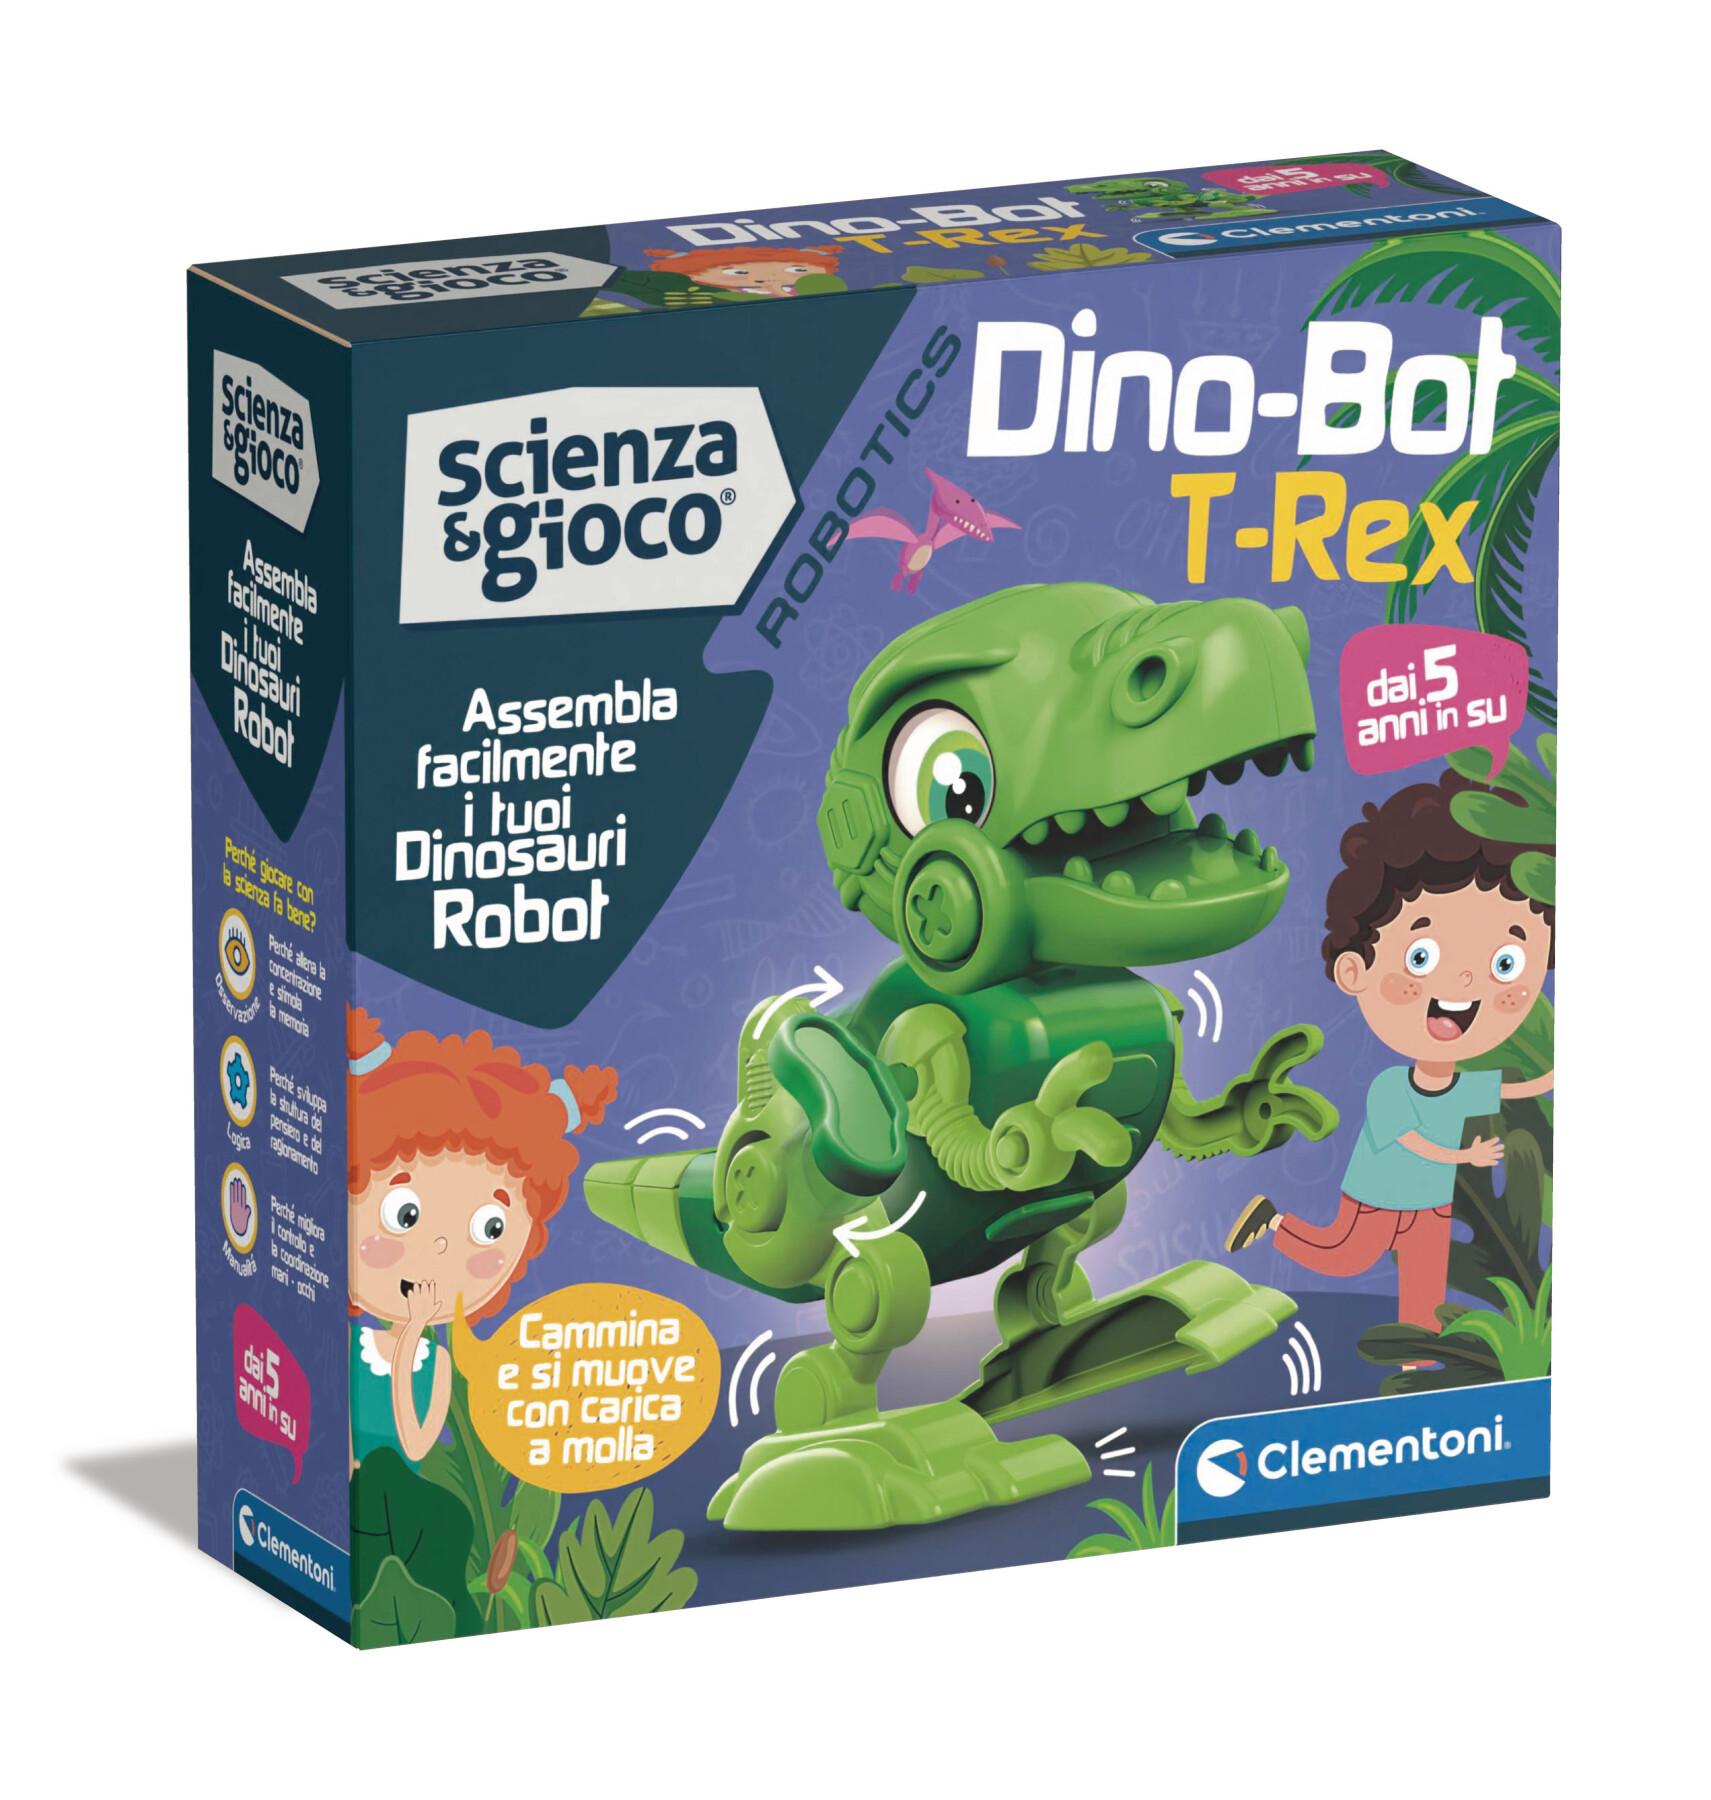 Dinobot t-rex - 